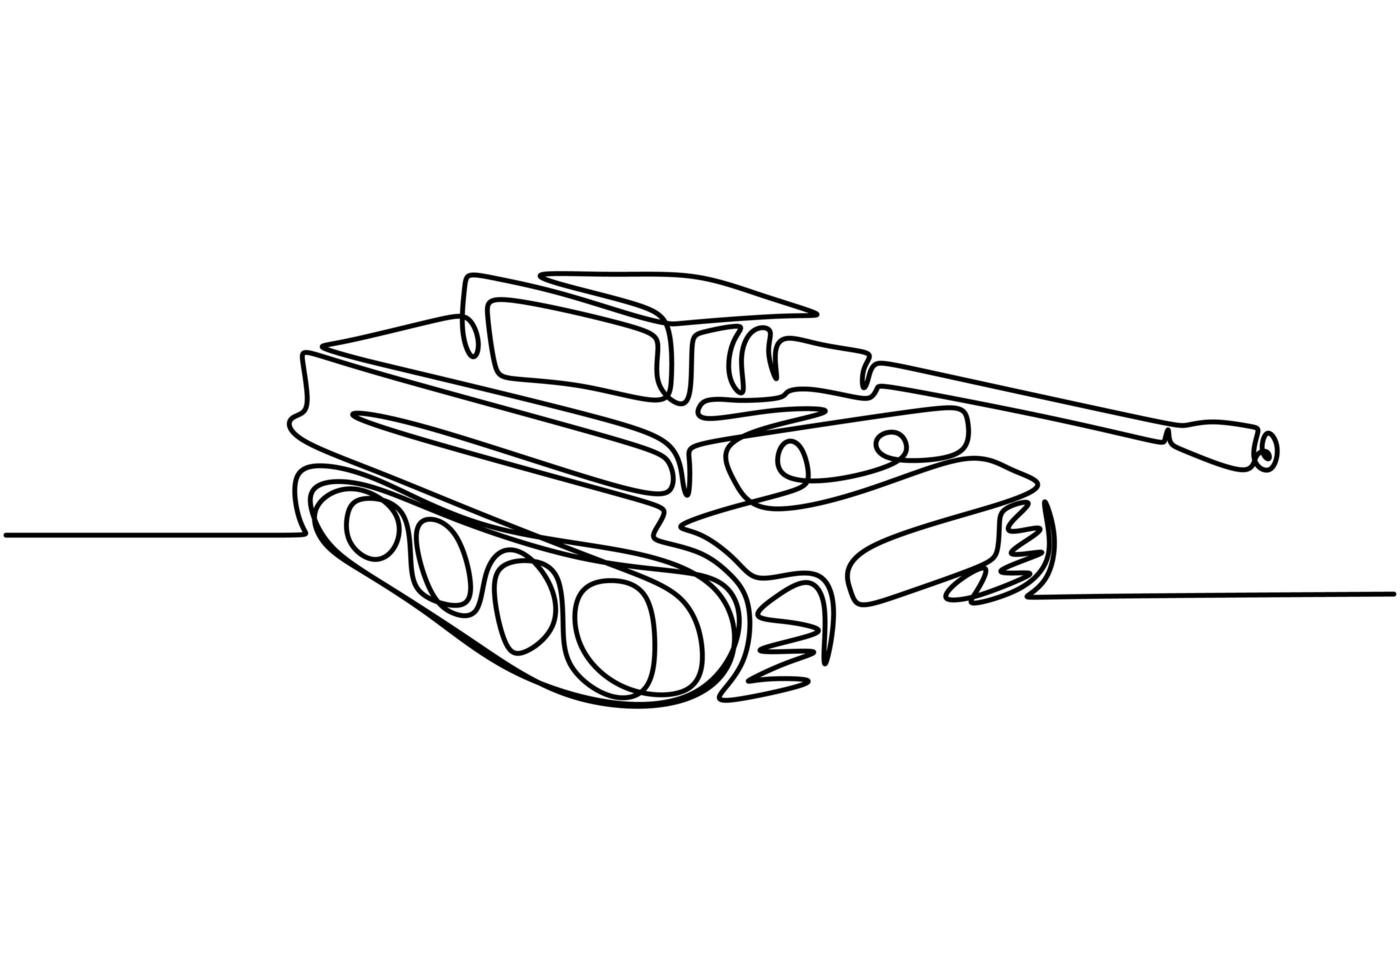 serbatoio un disegno a tratteggio. un veicolo da combattimento corazzato progettato per il combattimento in prima linea. illustrazione vettoriale motore dell'esercito, minimalismo disegnato a mano continua.